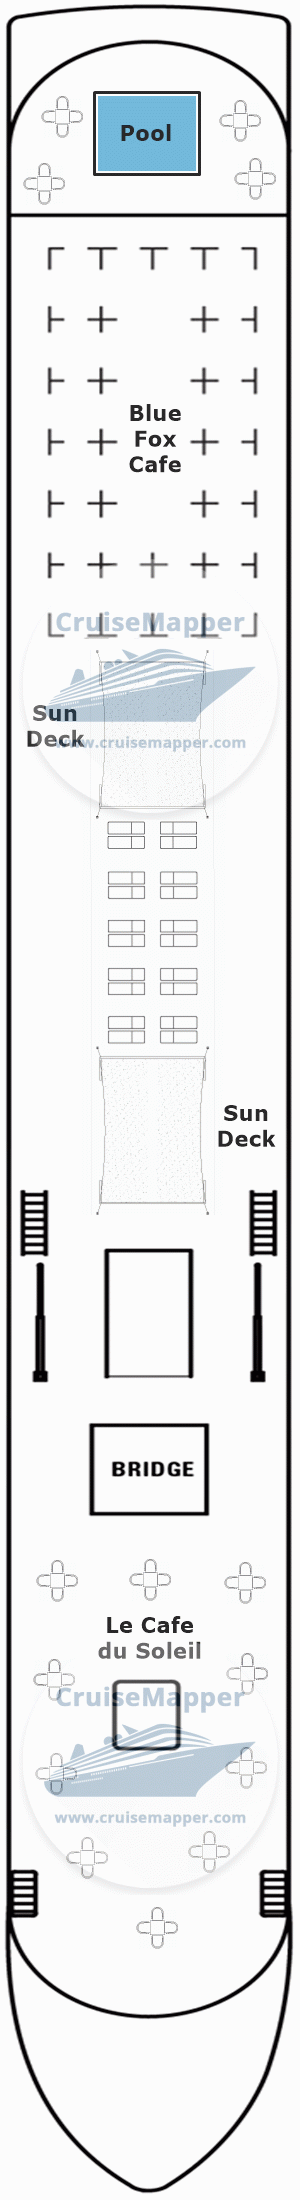 SS Bon Voyage Deck 04 - Sun-Pool